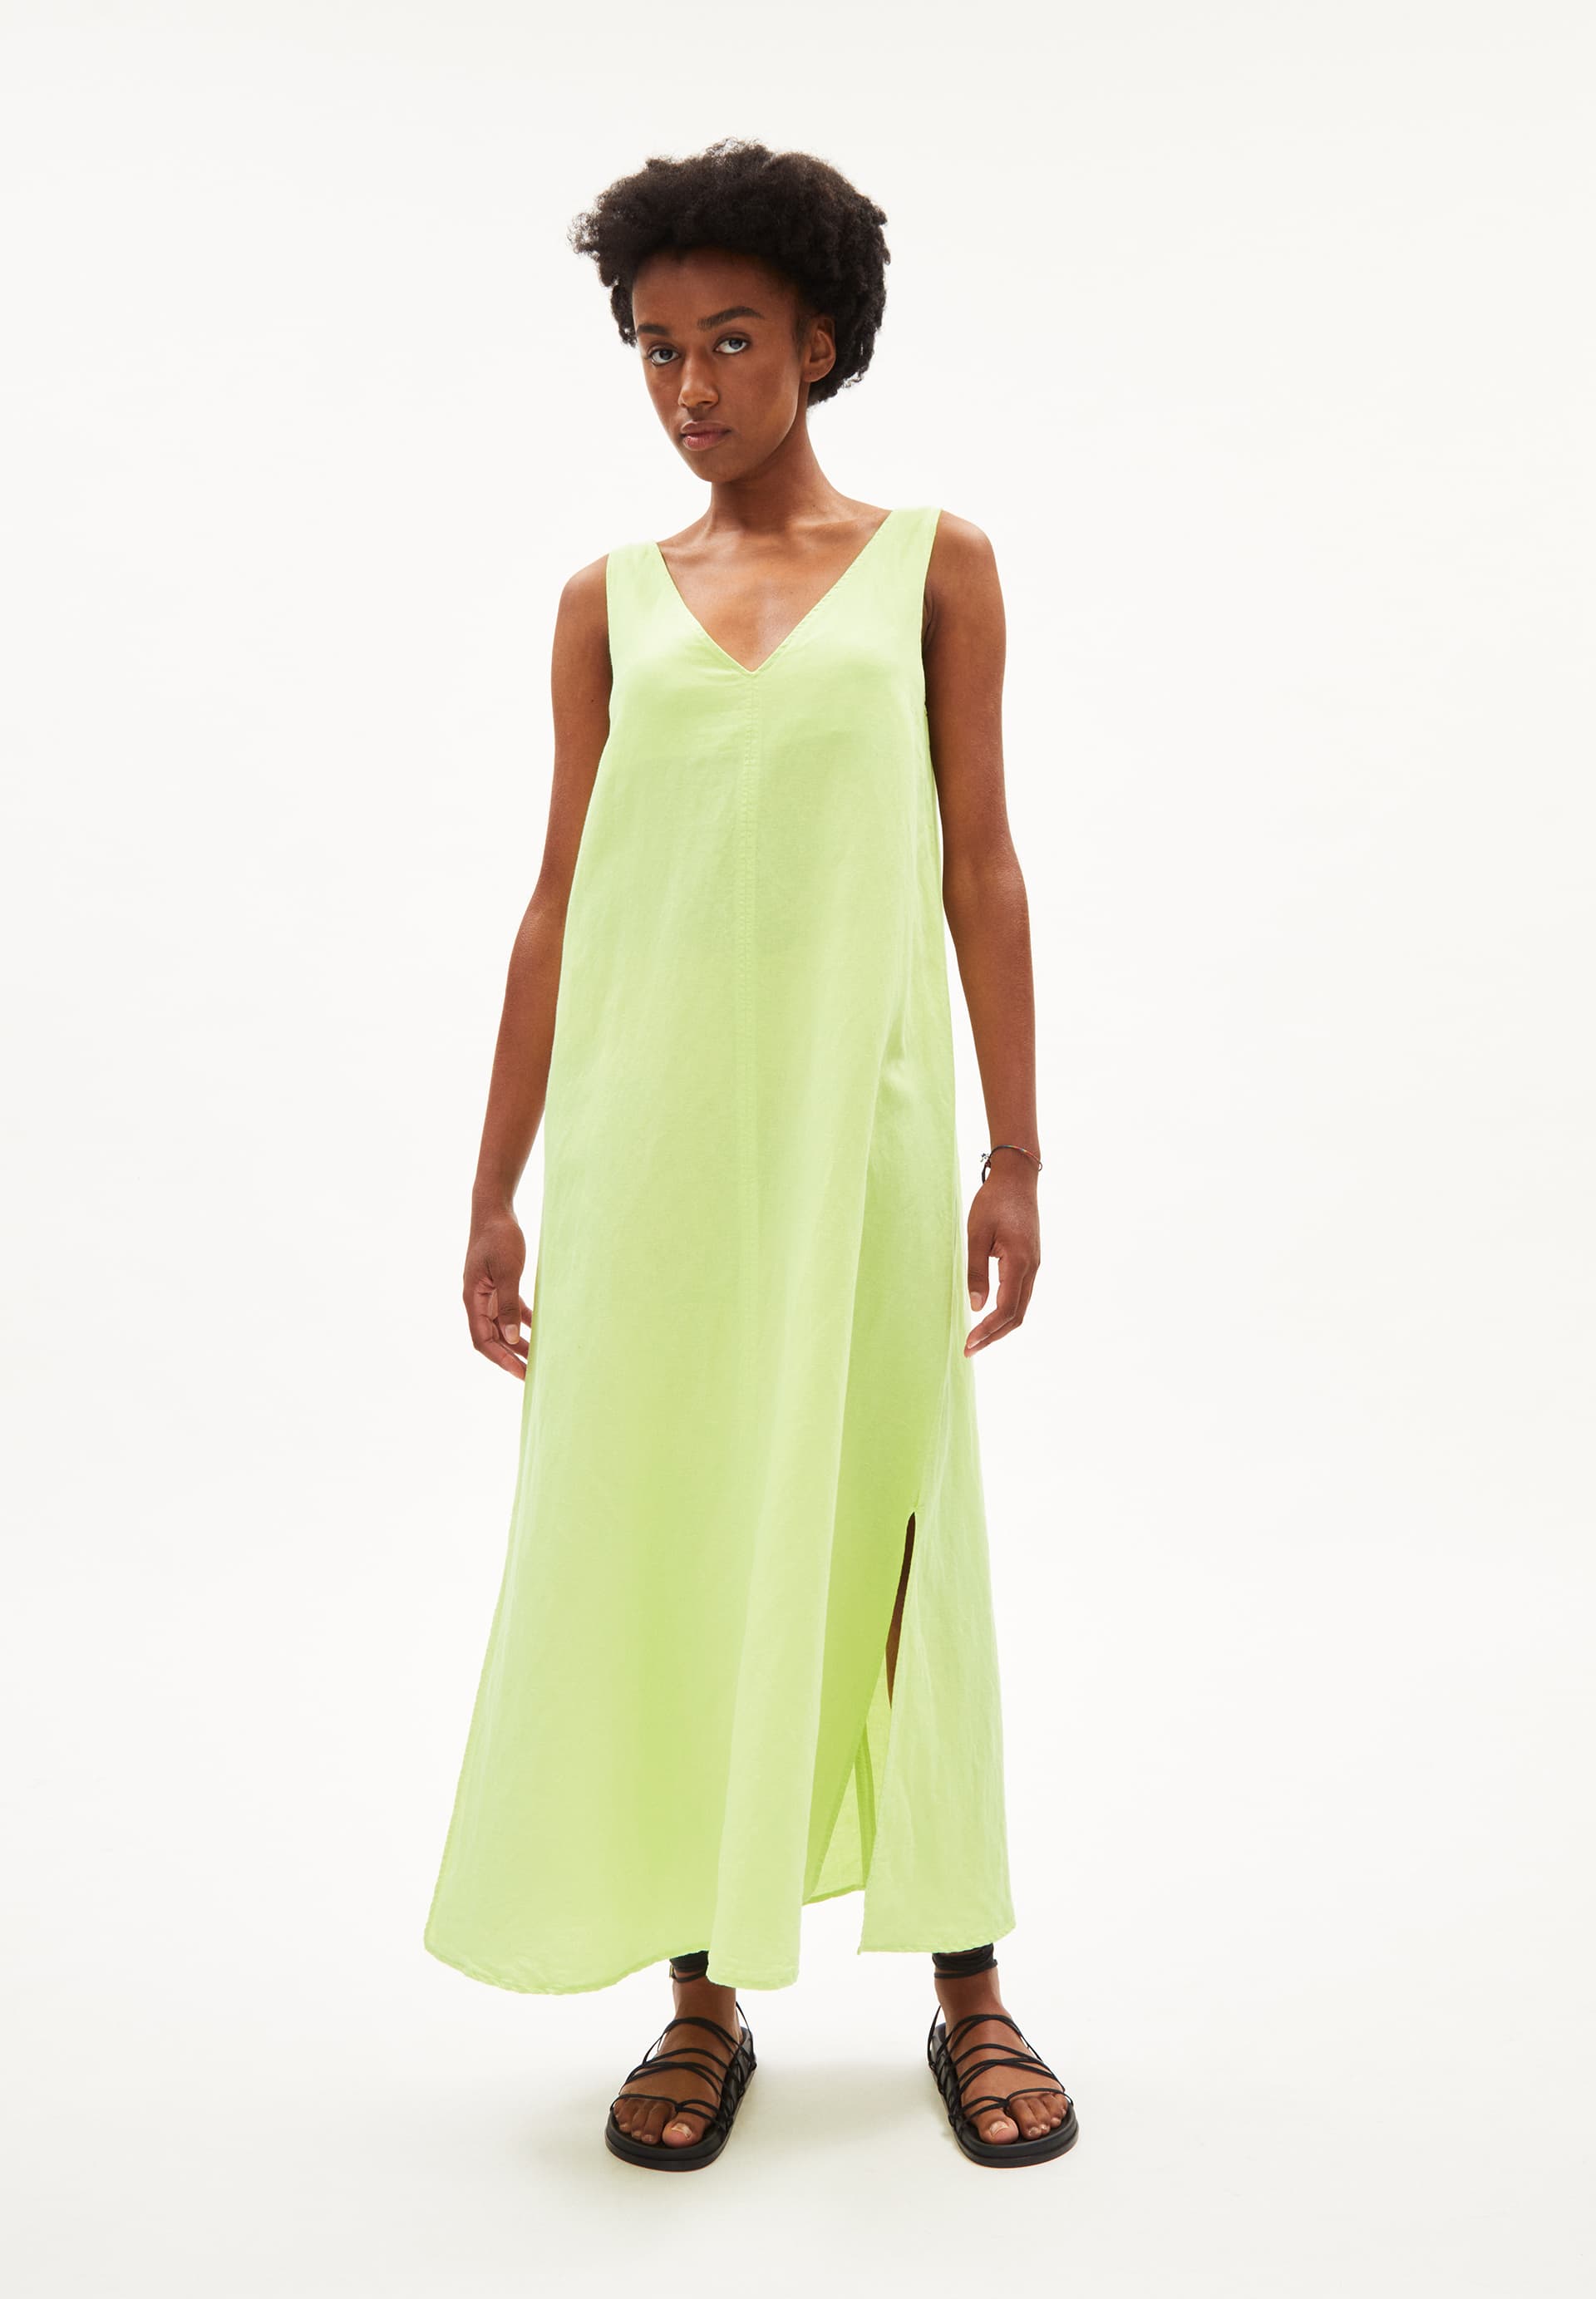 JORNAA LINO Woven Dress Regular Fit made of Linen-Mix